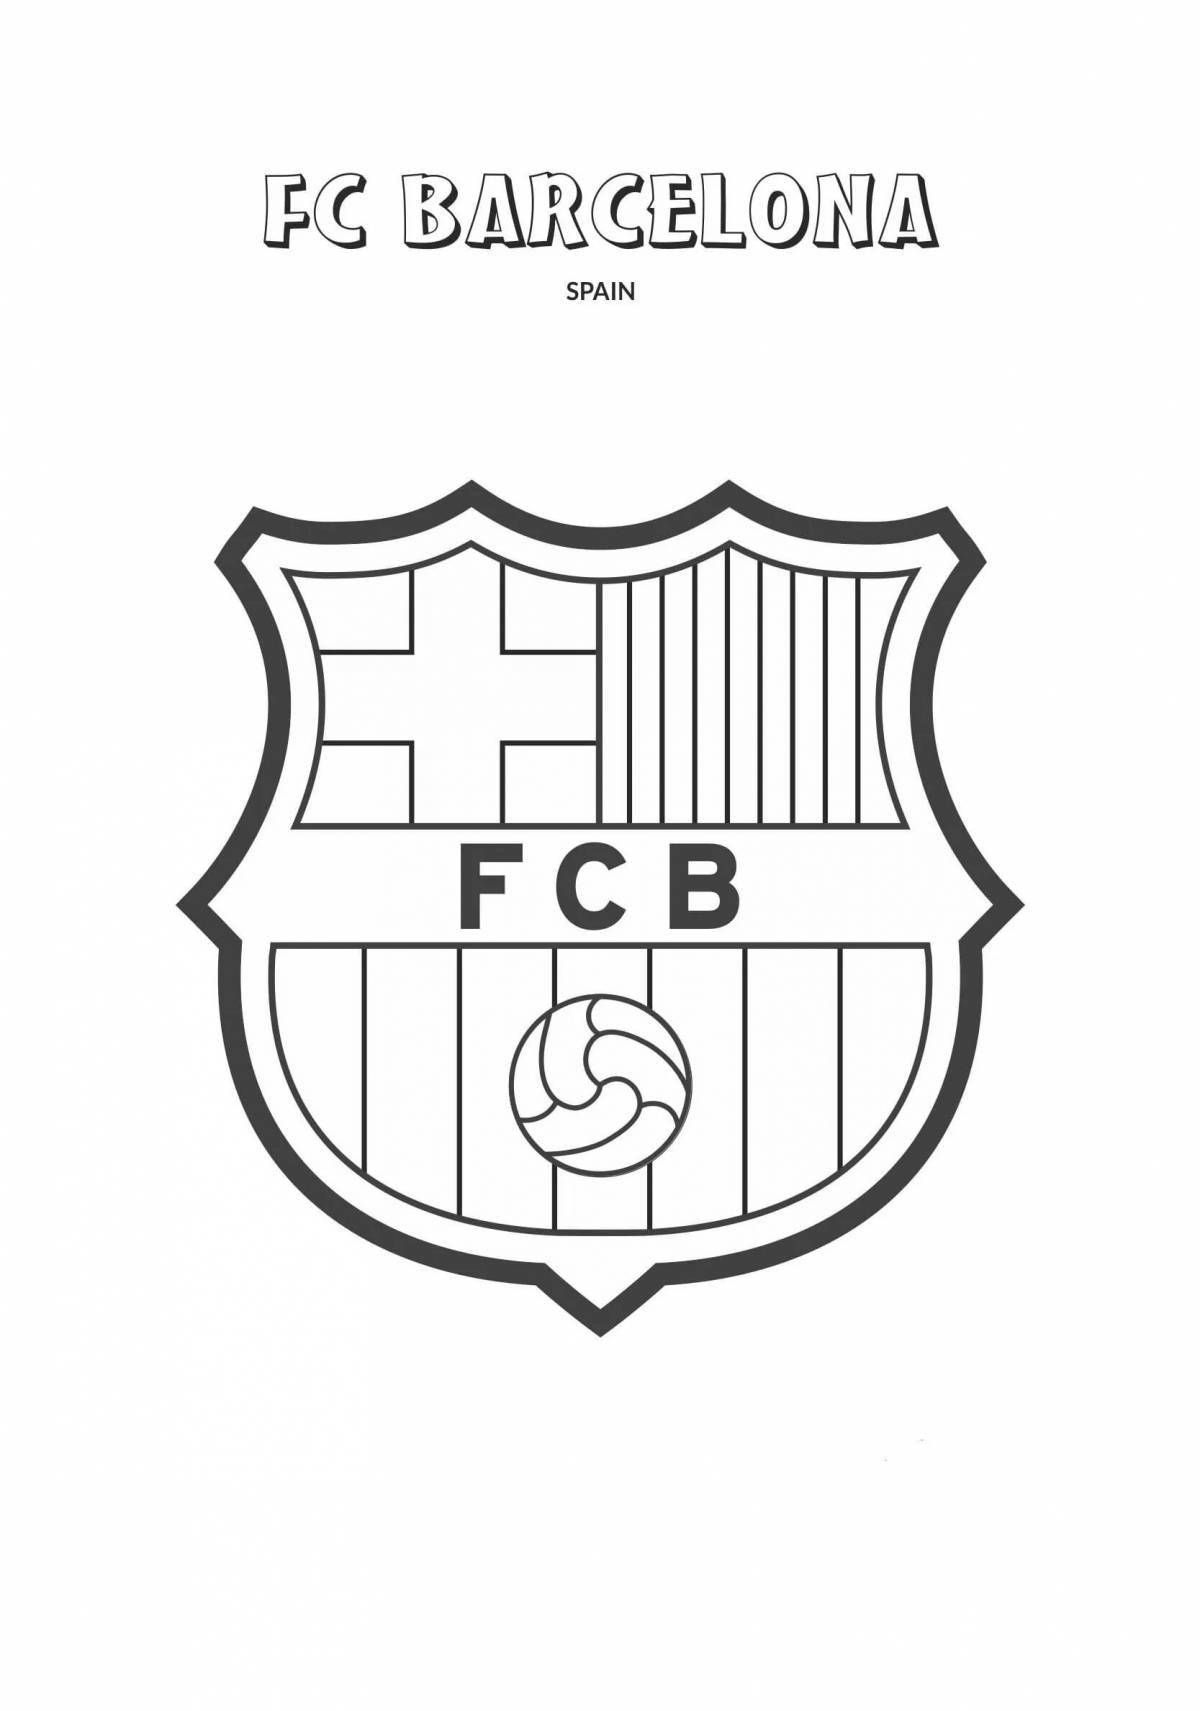 Animated footballers of barcelona